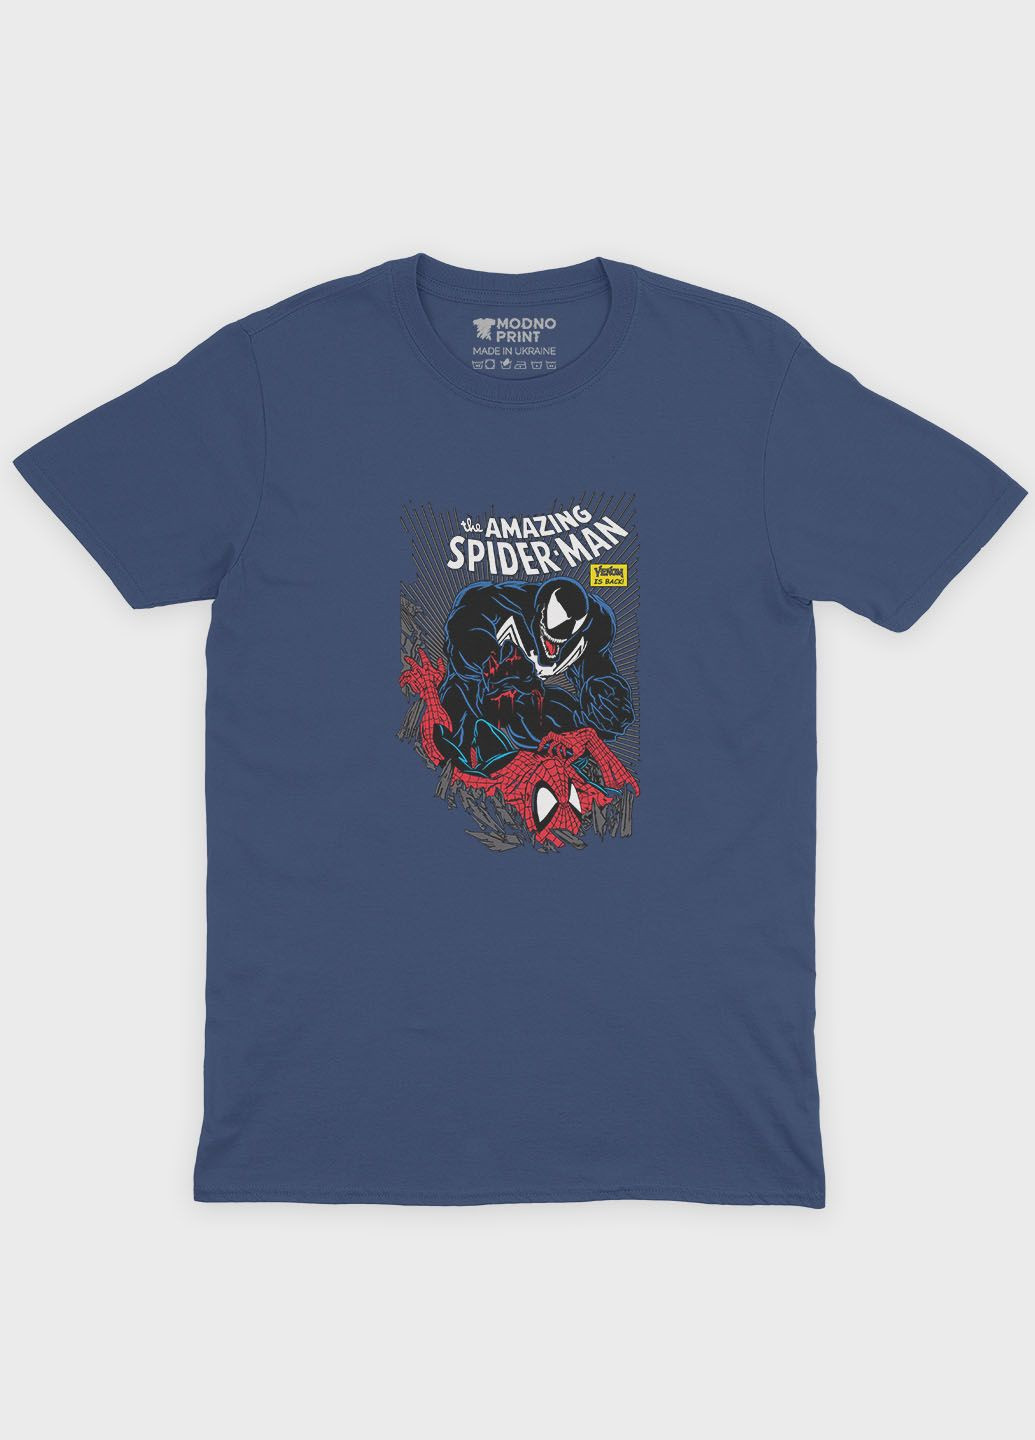 Темно-синяя демисезонная футболка для мальчика с принтом супергероя - человек-паук (ts001-1-nav-006-014-052-b) Modno